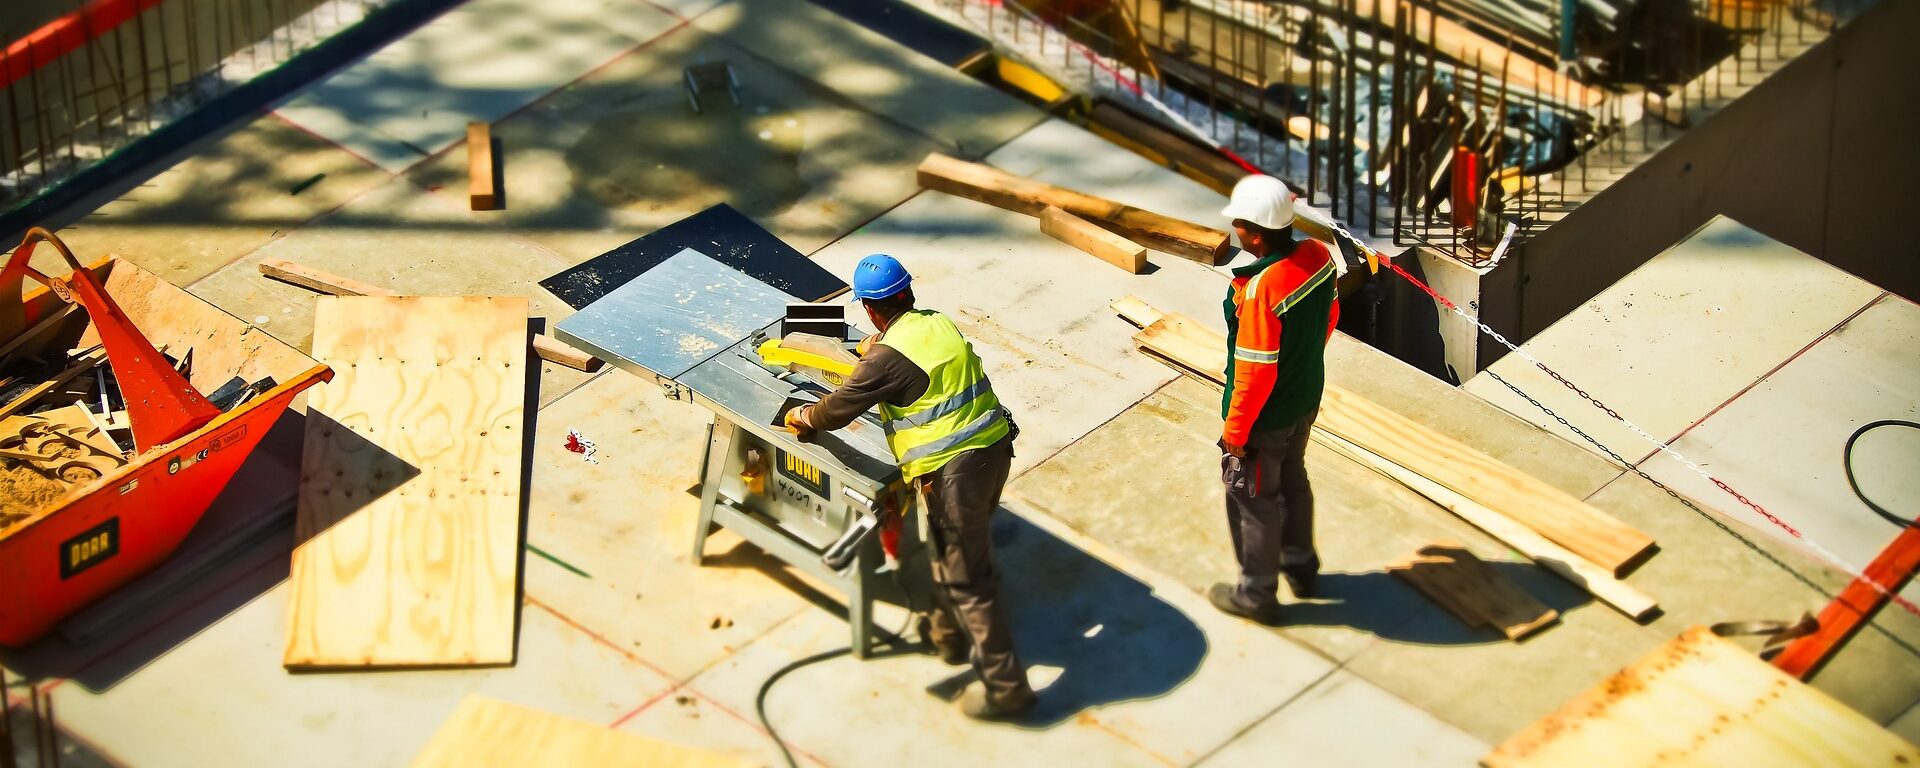 Együttműködés a munkahelyek biztonságáért -Kiküldött munkavállalók jogai az építőiparban